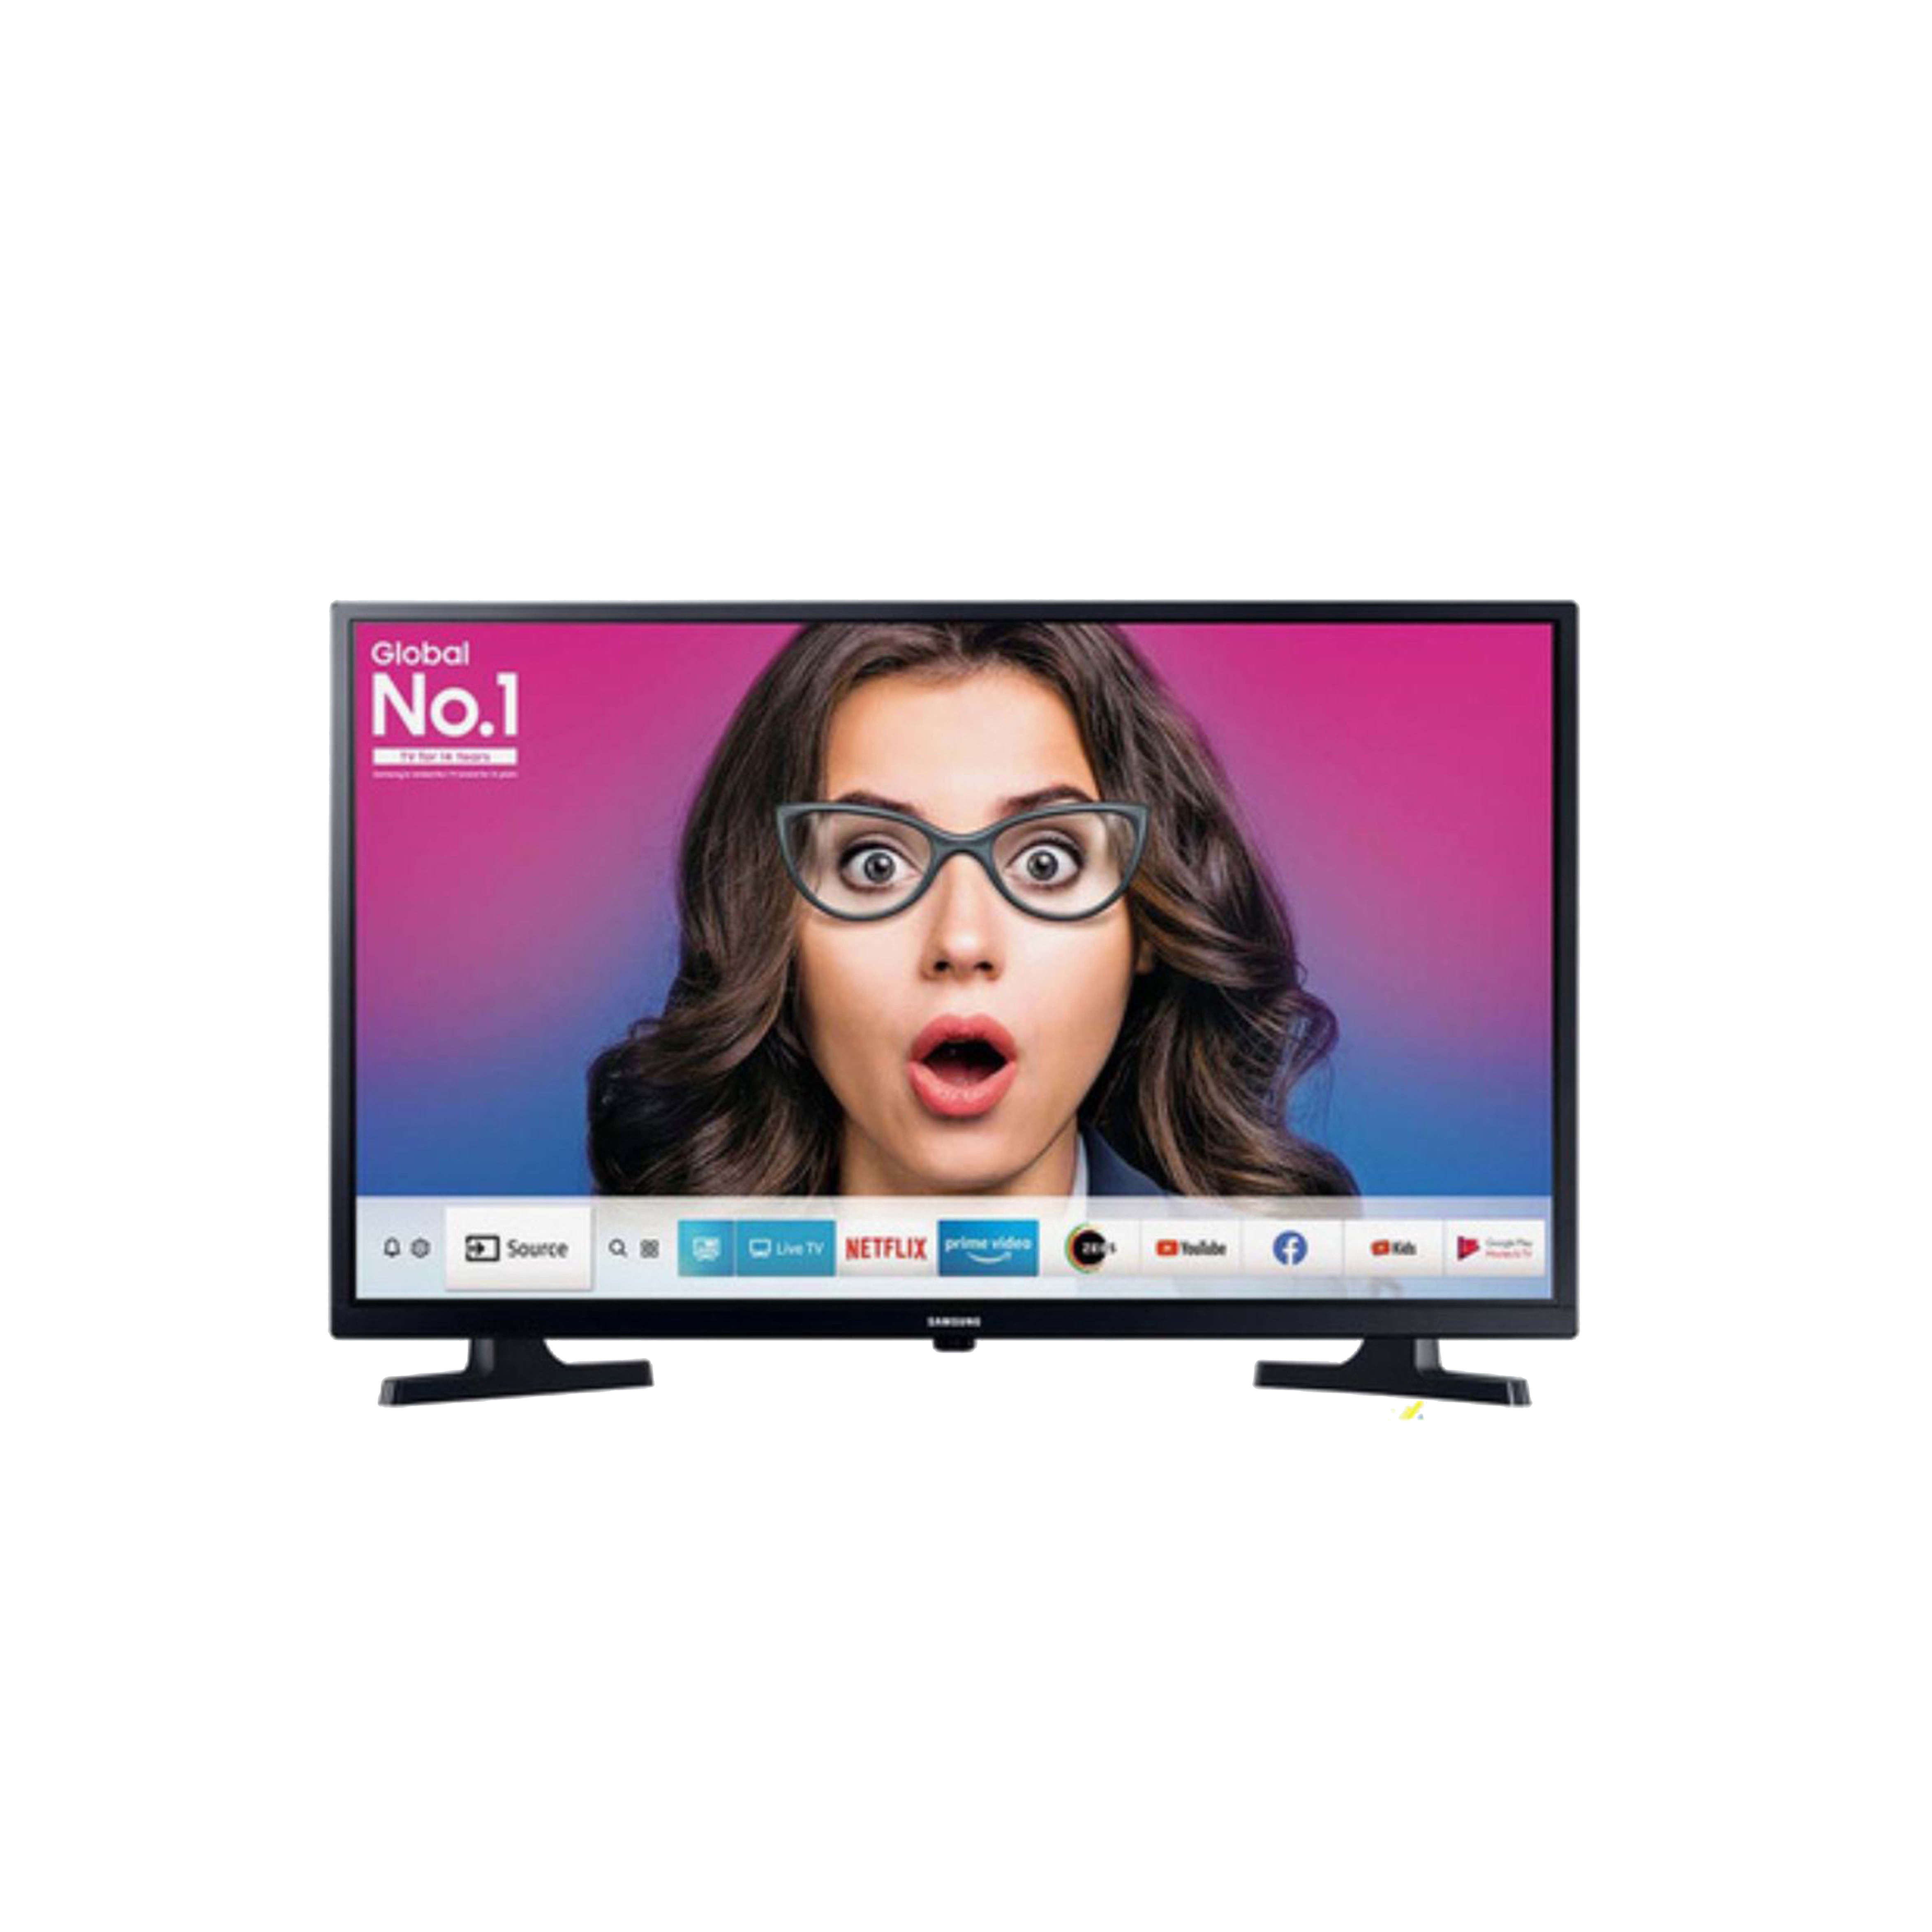 Samsung Smart TV - HDTV - UA32T4310BKXXL - 32 Inches